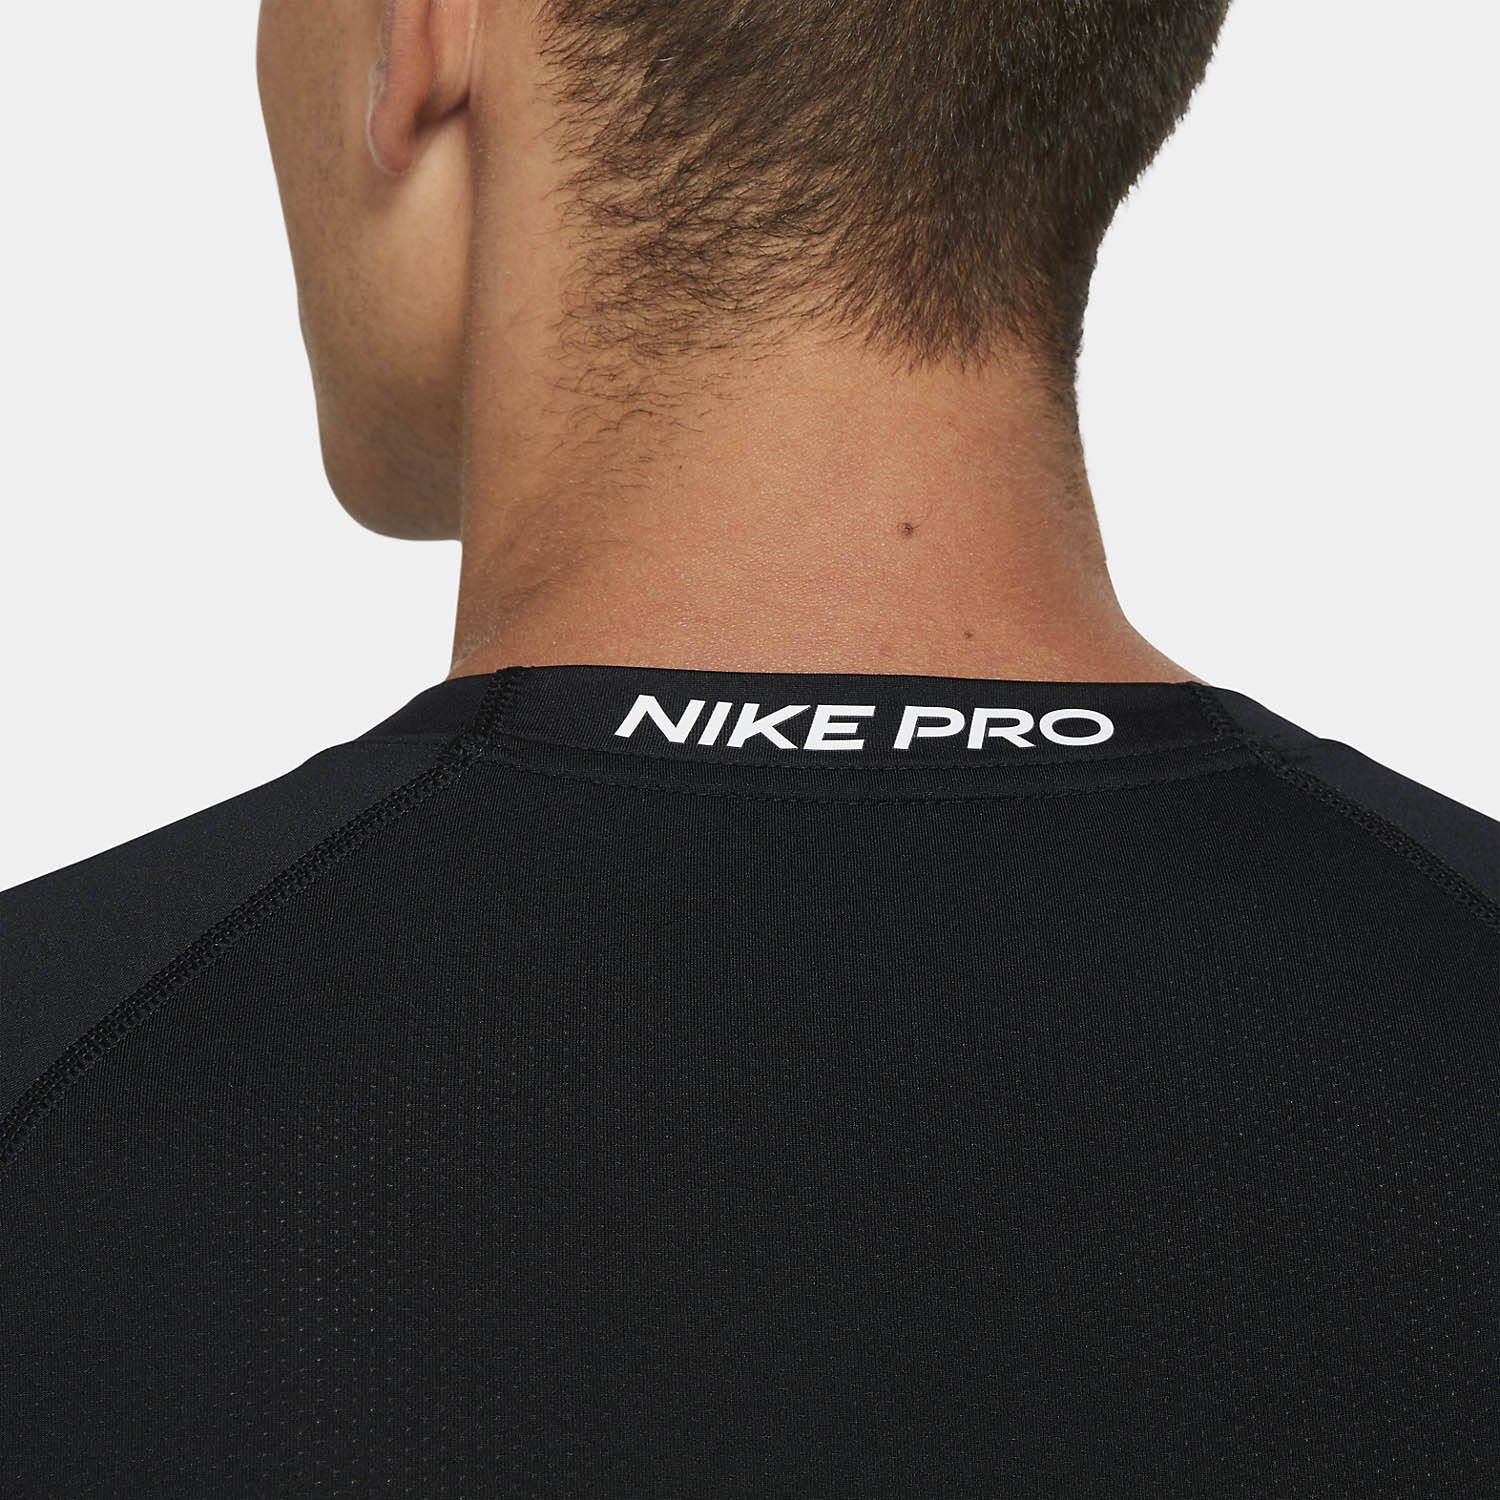 Nike Pro Logo Men's Training T-Shirt - Black/White